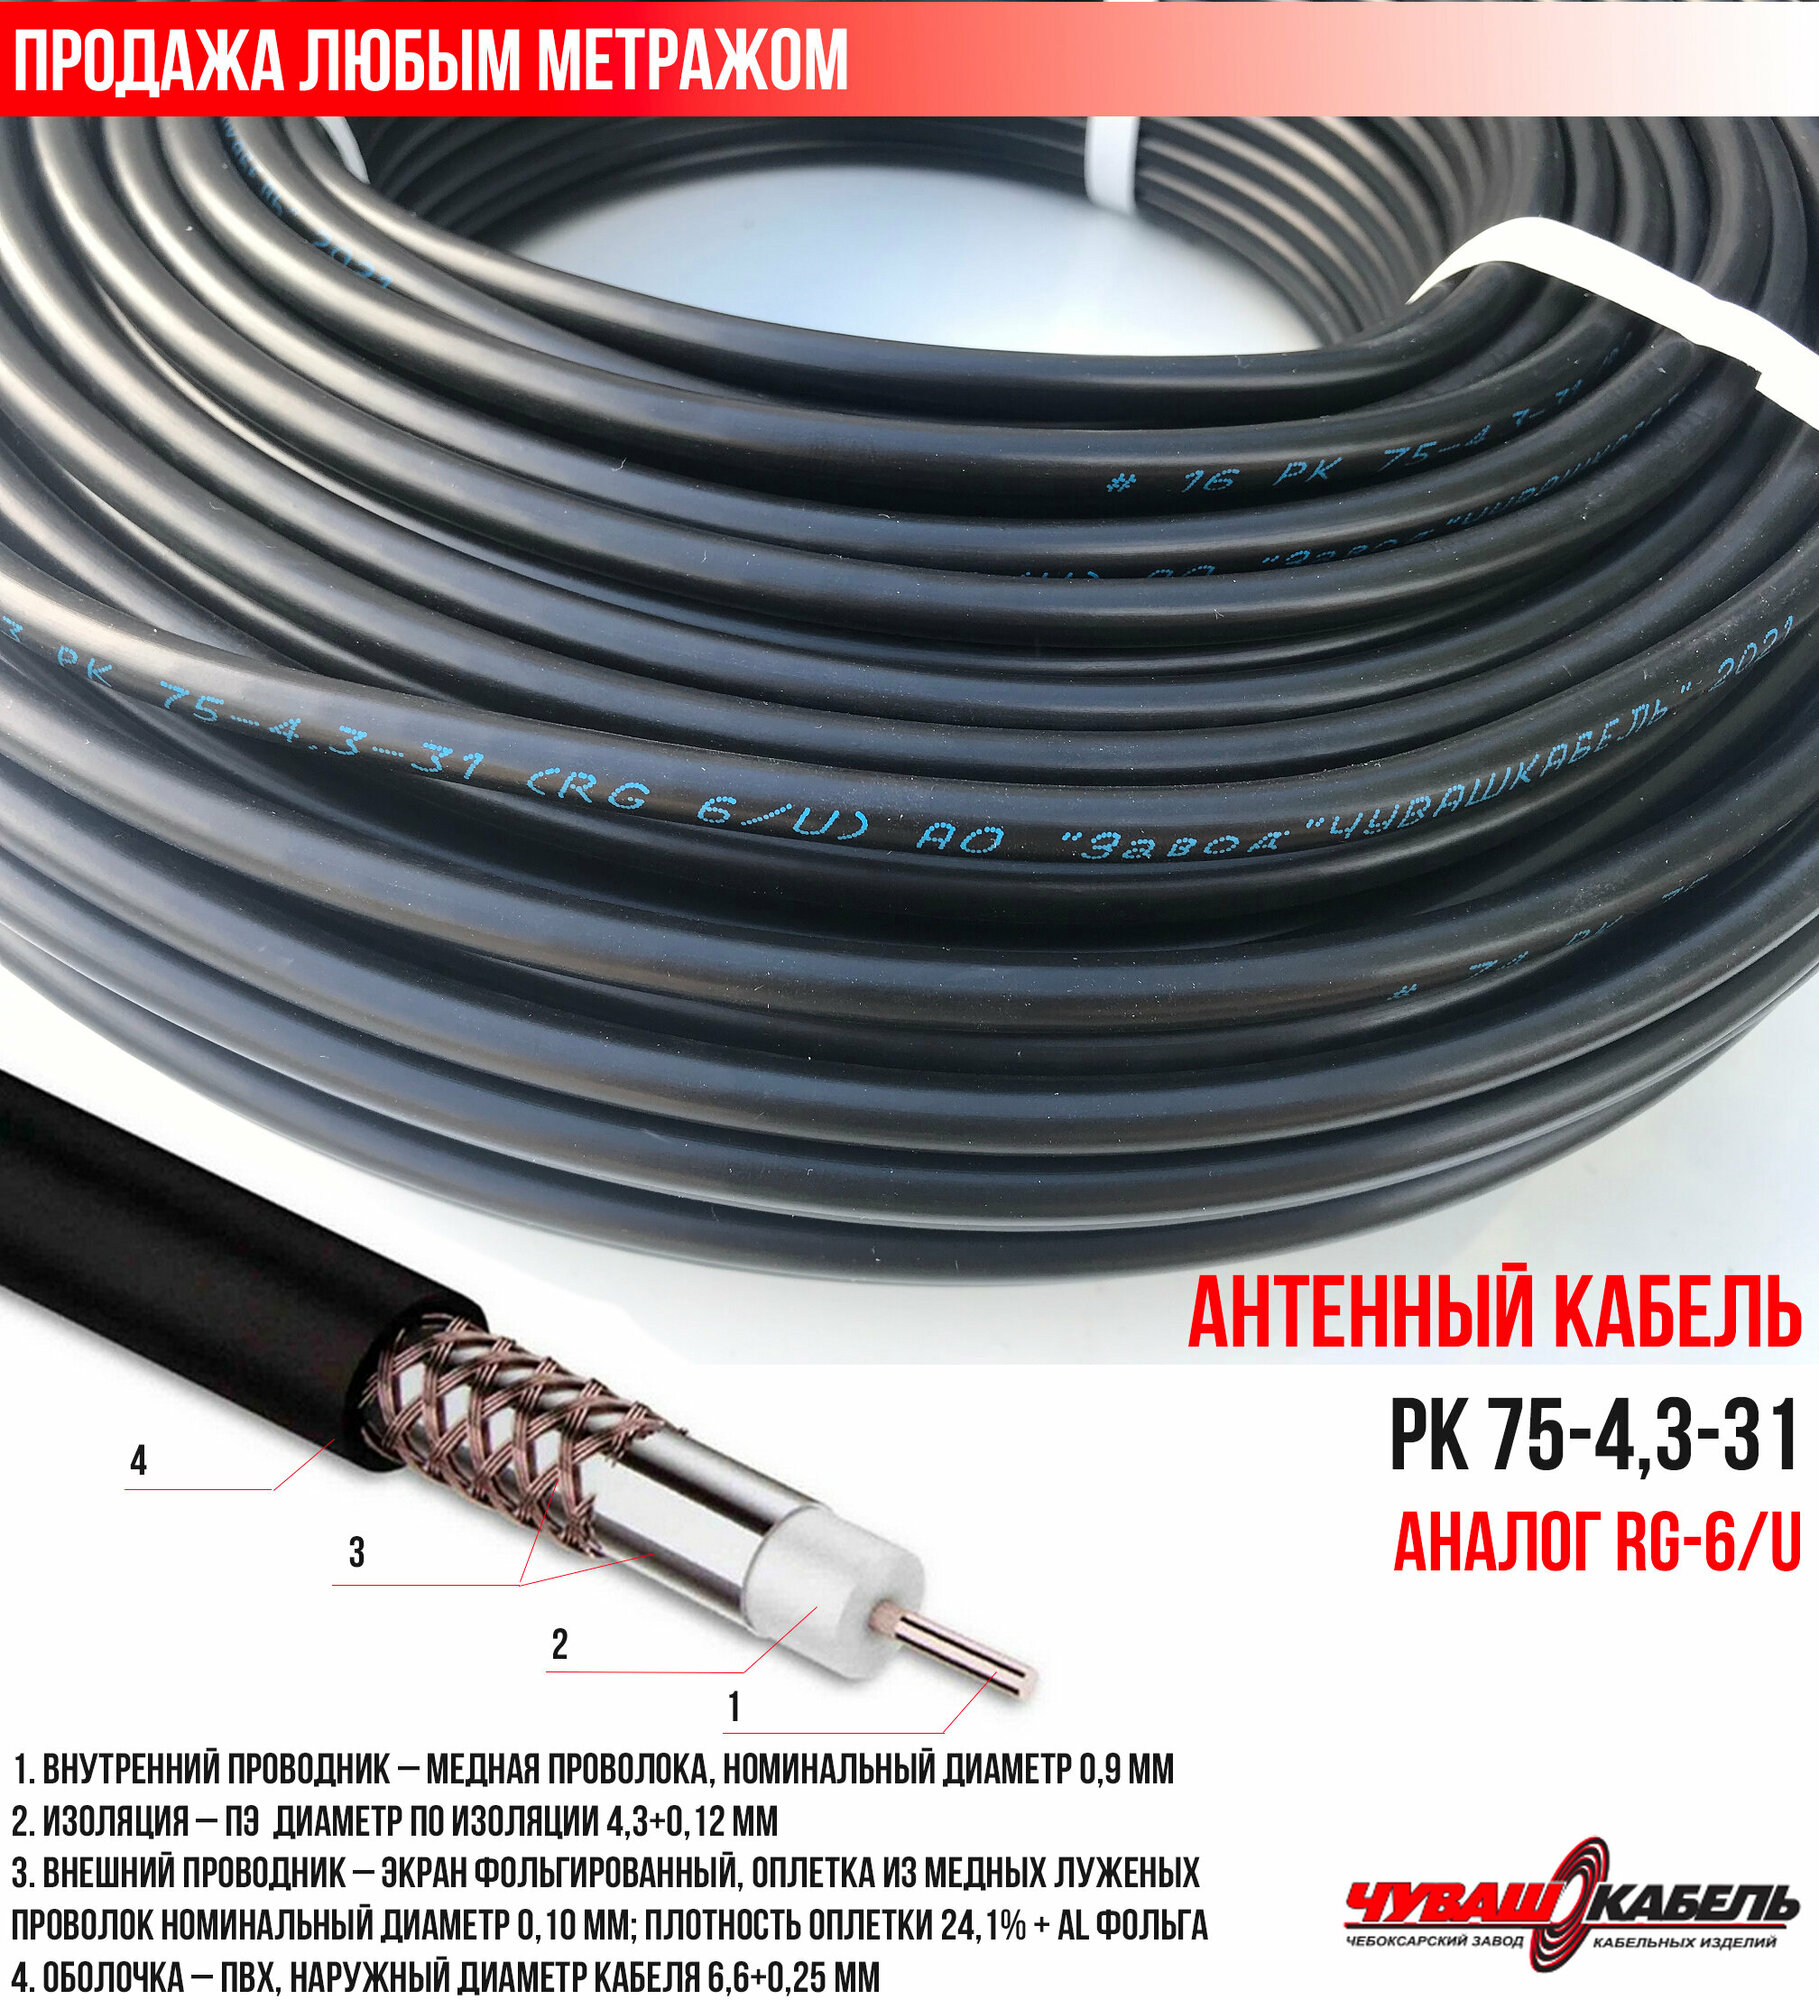 Телевизионный кабель (антенный 75Ом) РК 75-4,3-31 ЧувашКабель для уличной прокладки (продажа метражом)